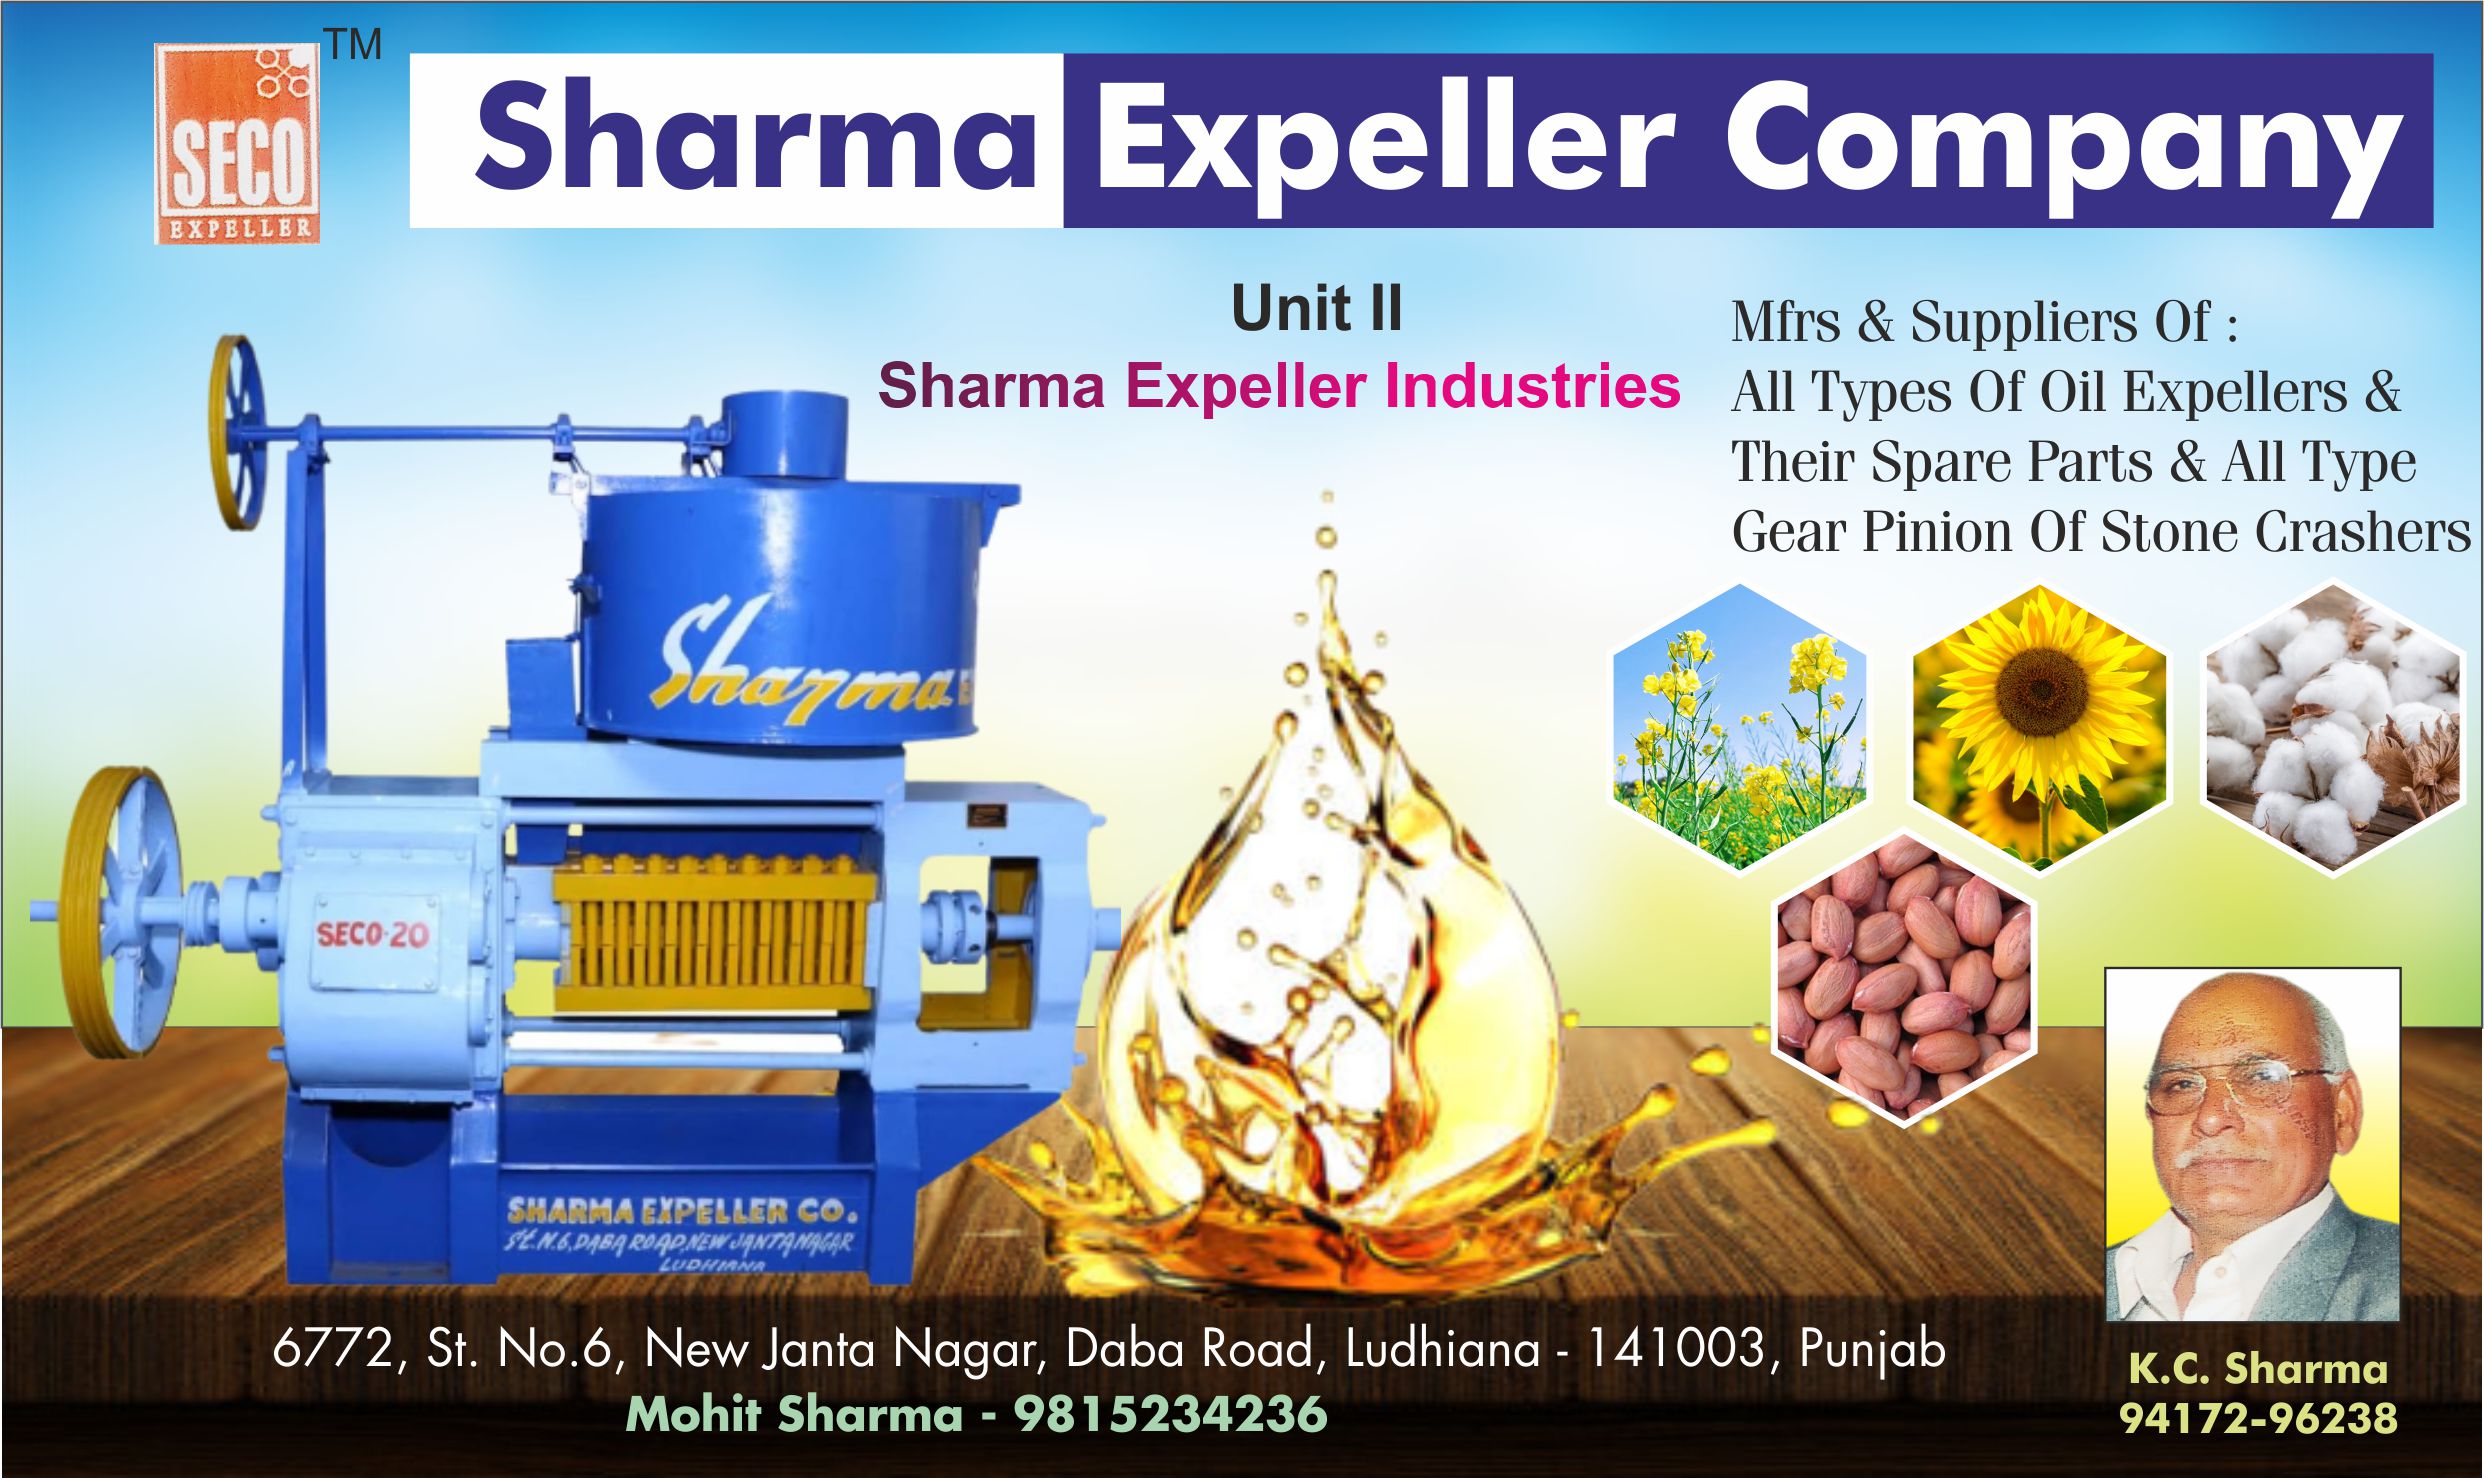 Sharma Expeller Company